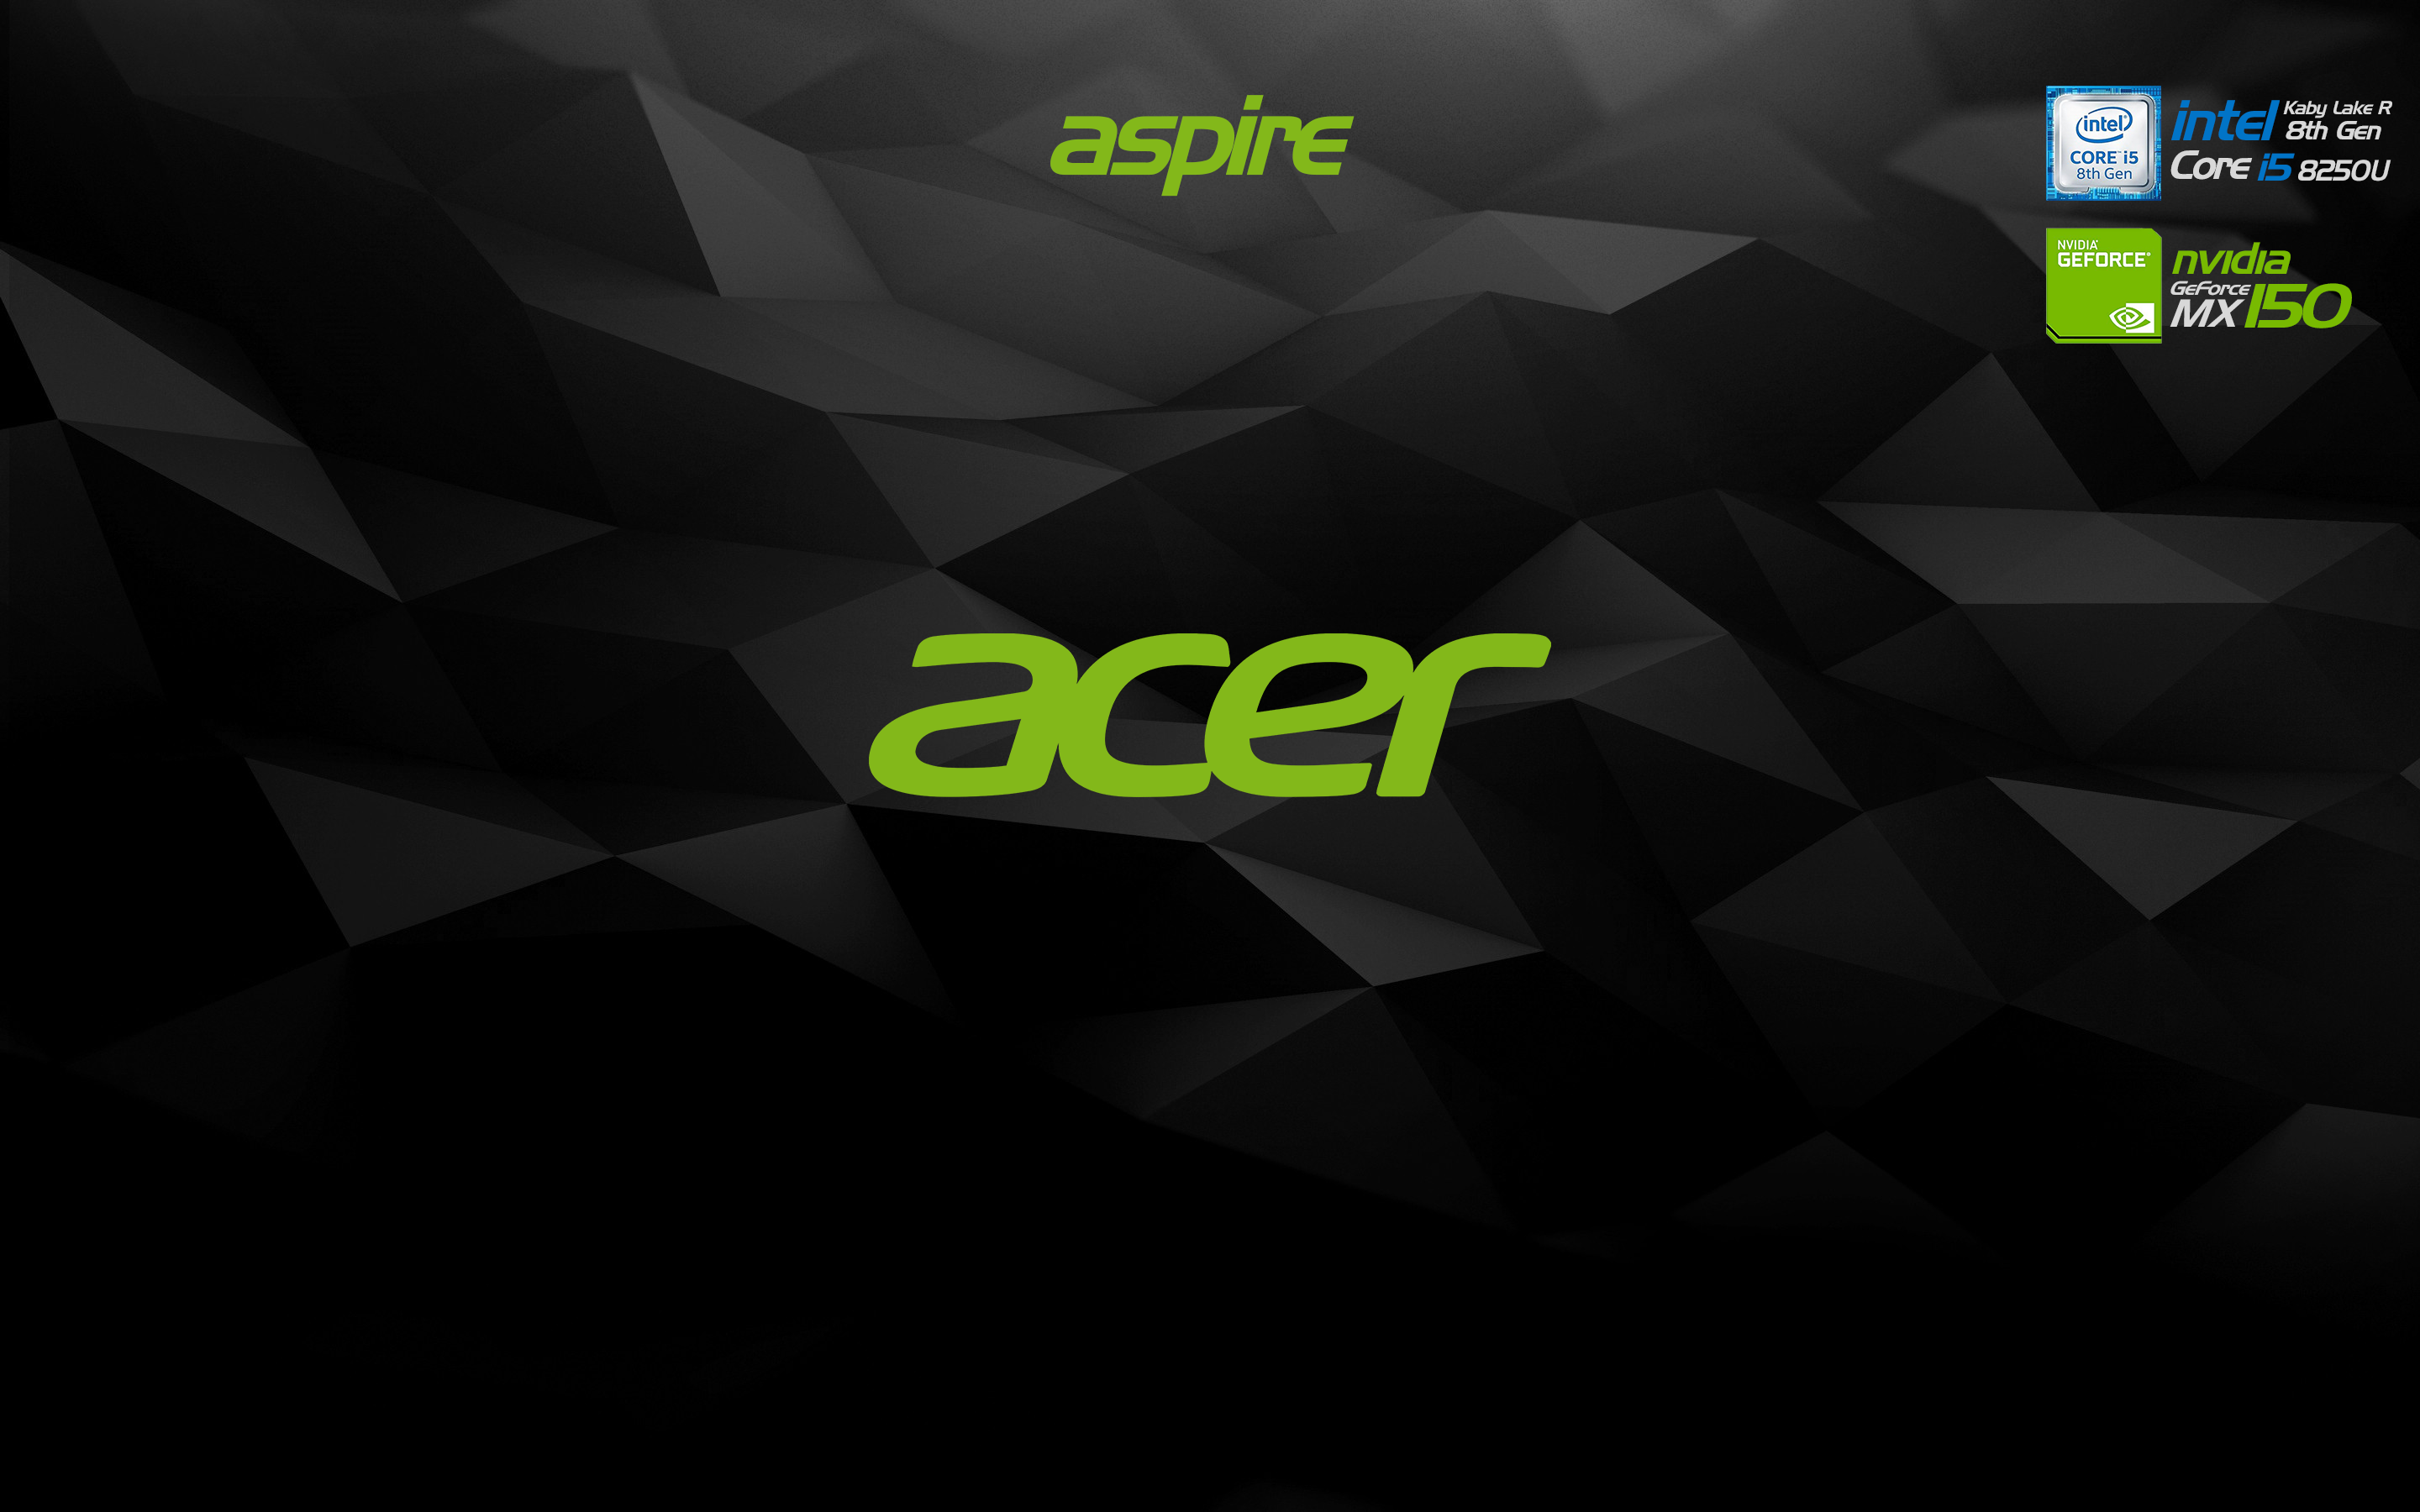 Acer Aspire là chiếc laptop đáng mua nhất của năm. Tại sao không trang trí nó với một bức hình nền đẹp để khiến nó trông thật bắt mắt? Nhấp vào hình ảnh để tìm cho mình một hình nền Acer Aspire đẹp nhất!